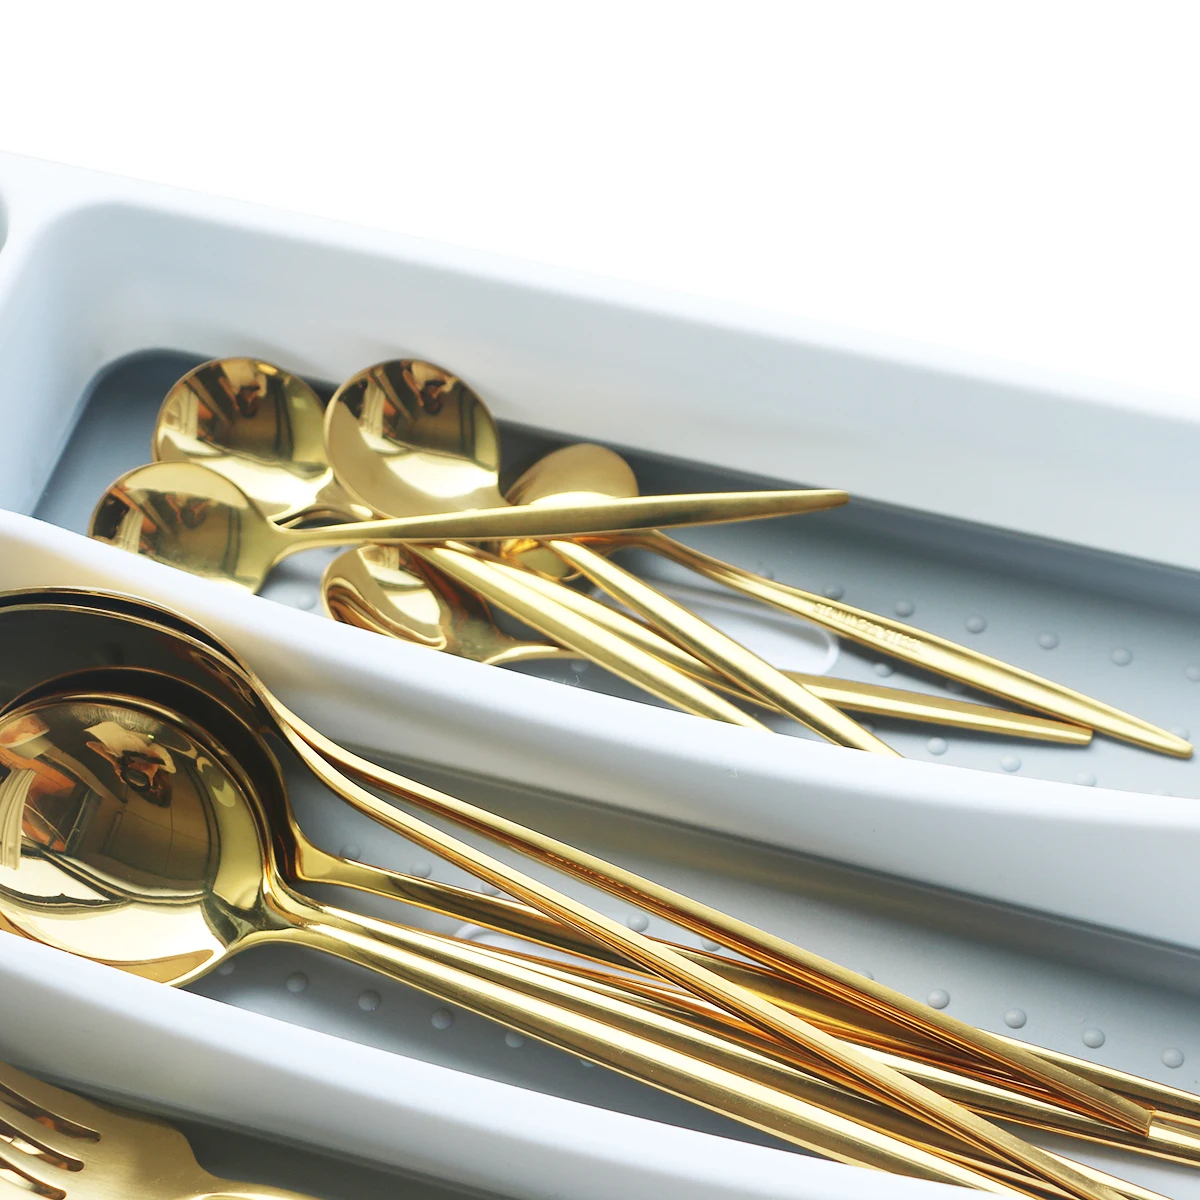 Cutlery Separation Organizer Rack  Cutlery Storage Rack Organizer - Kitchen  Drawer - Aliexpress